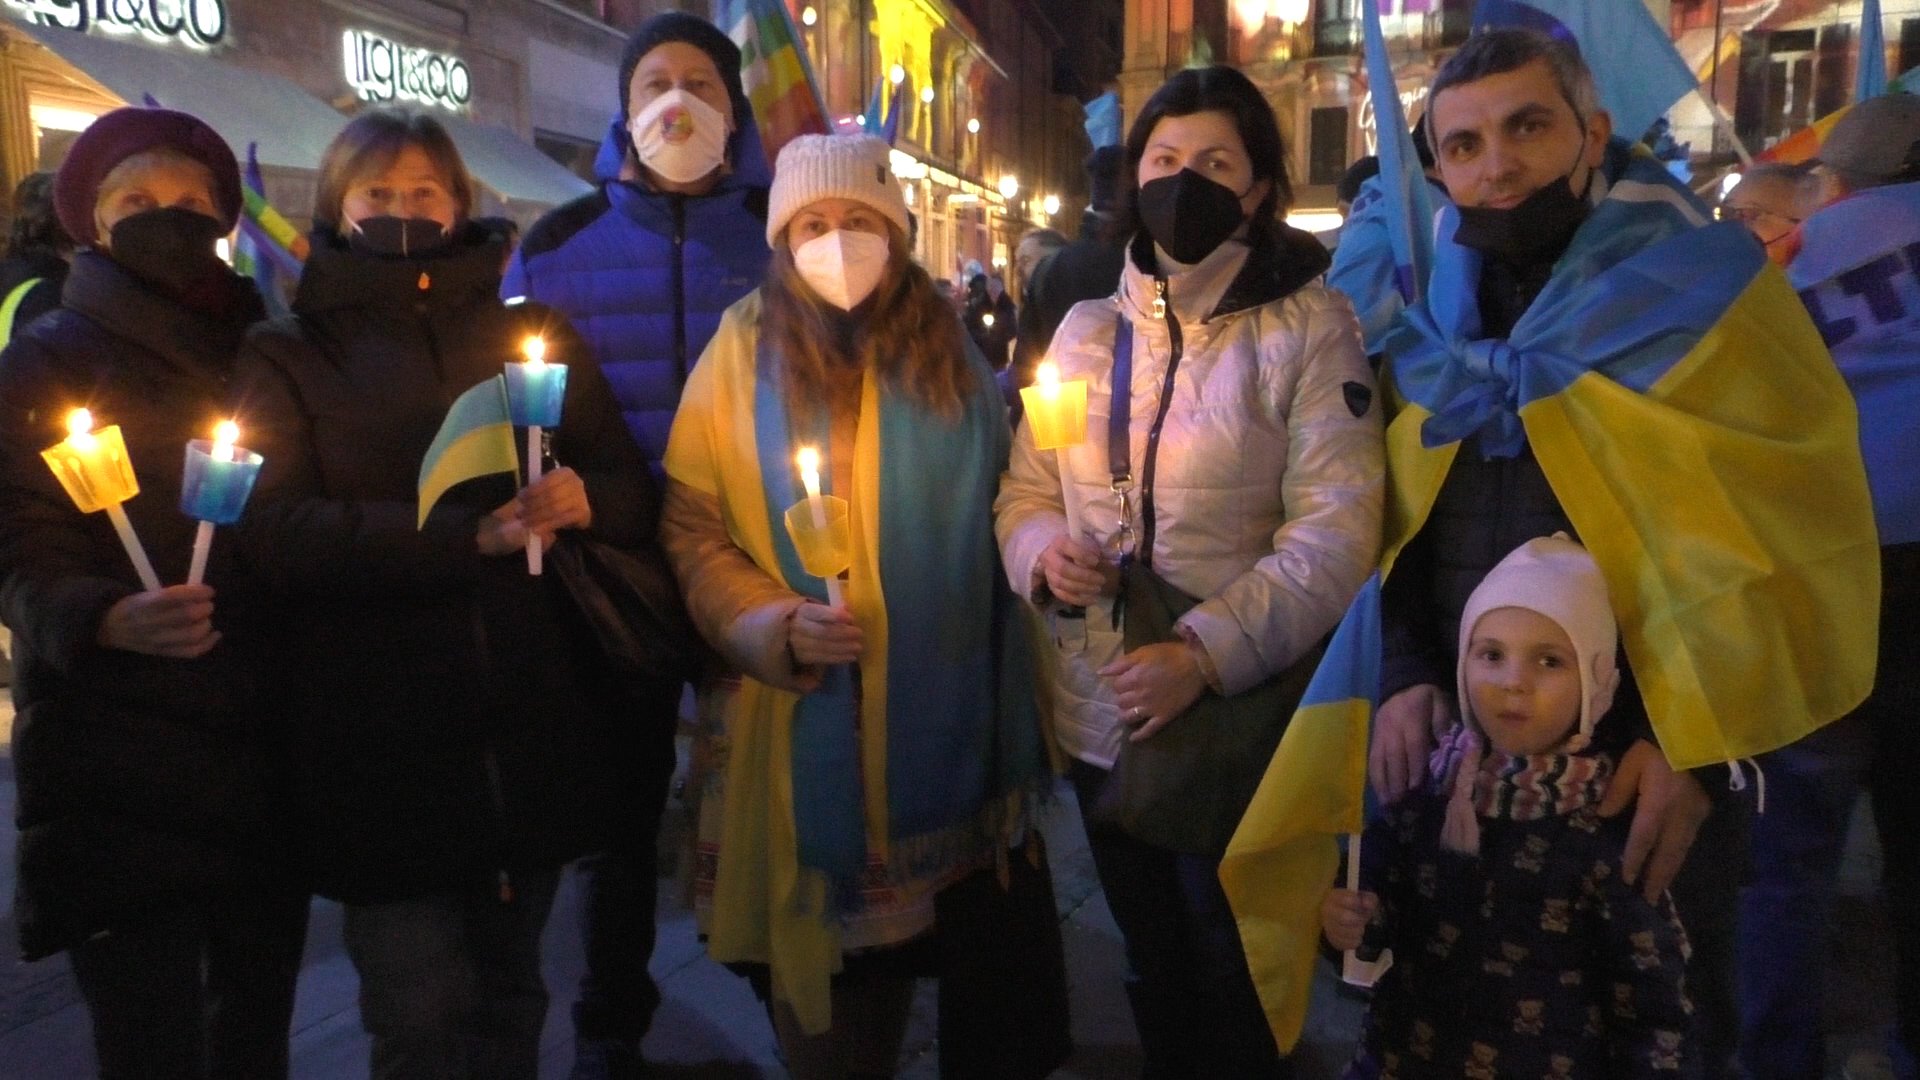 Ad Alessandria le voci dei cittadini ucraini: “I nostri parenti sono ancora là, è terribile”